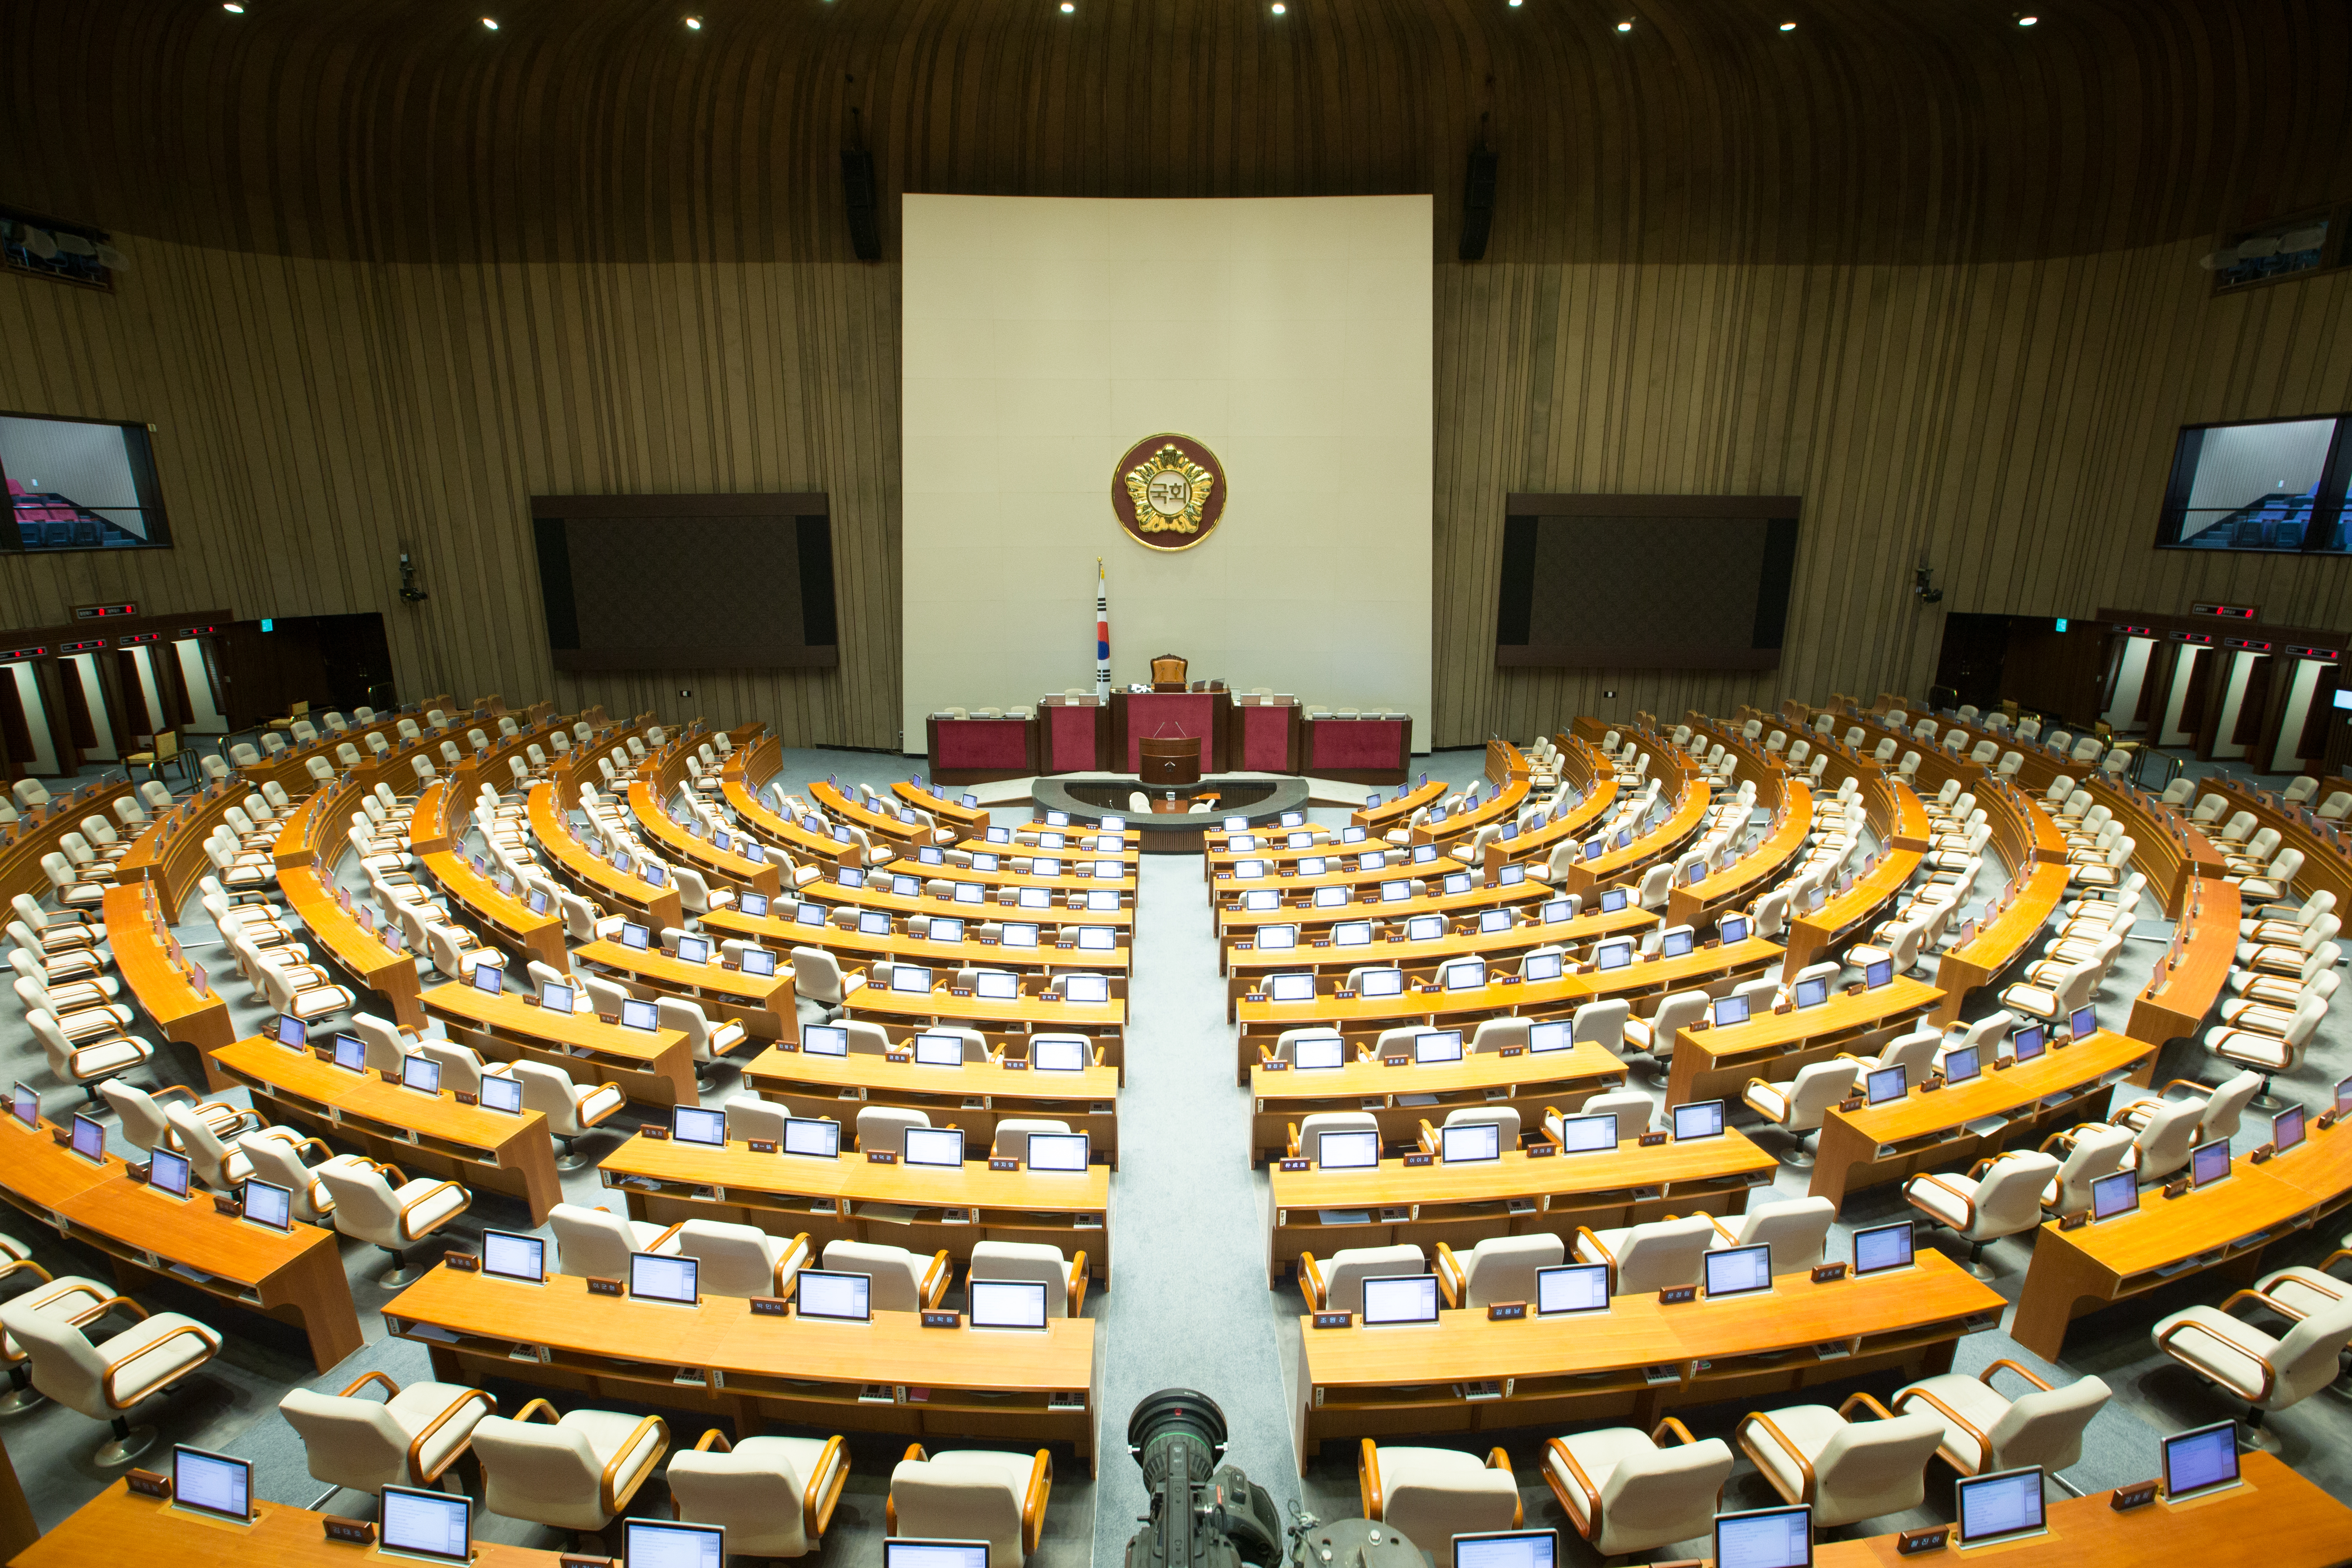 Plenary Chamber